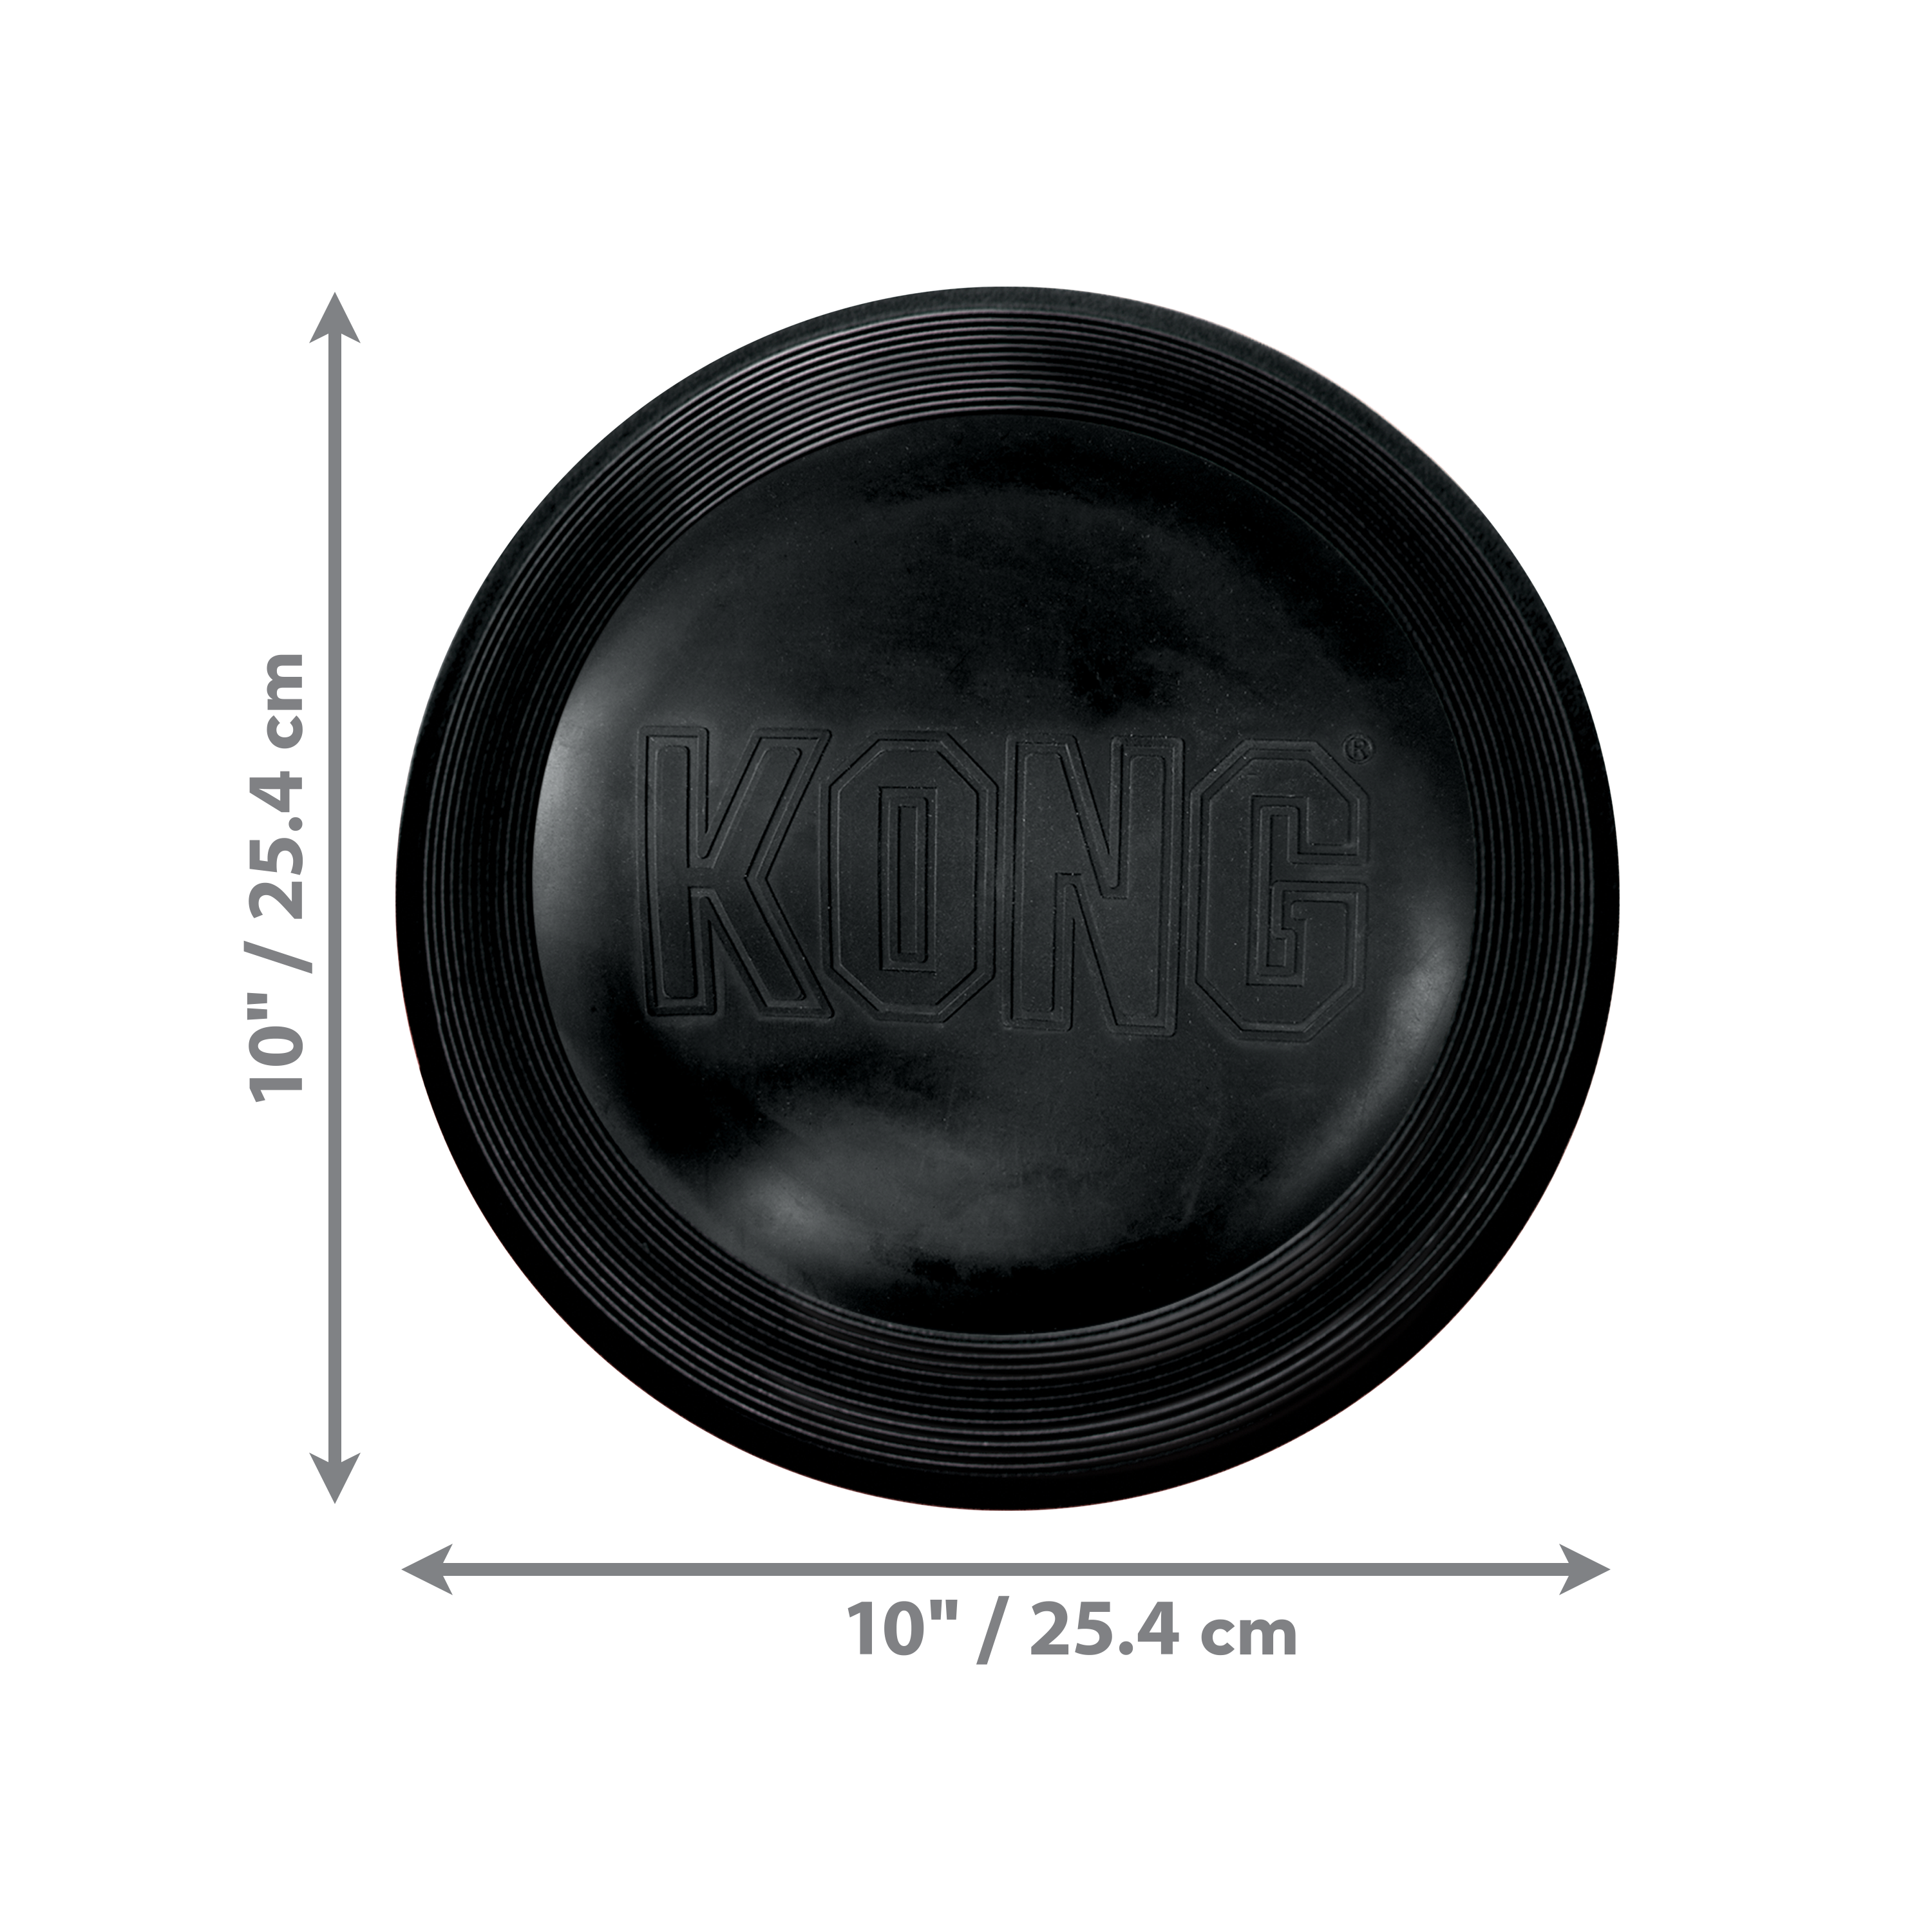 Imagem do produto KONG Extreme Flyer dimoffpack